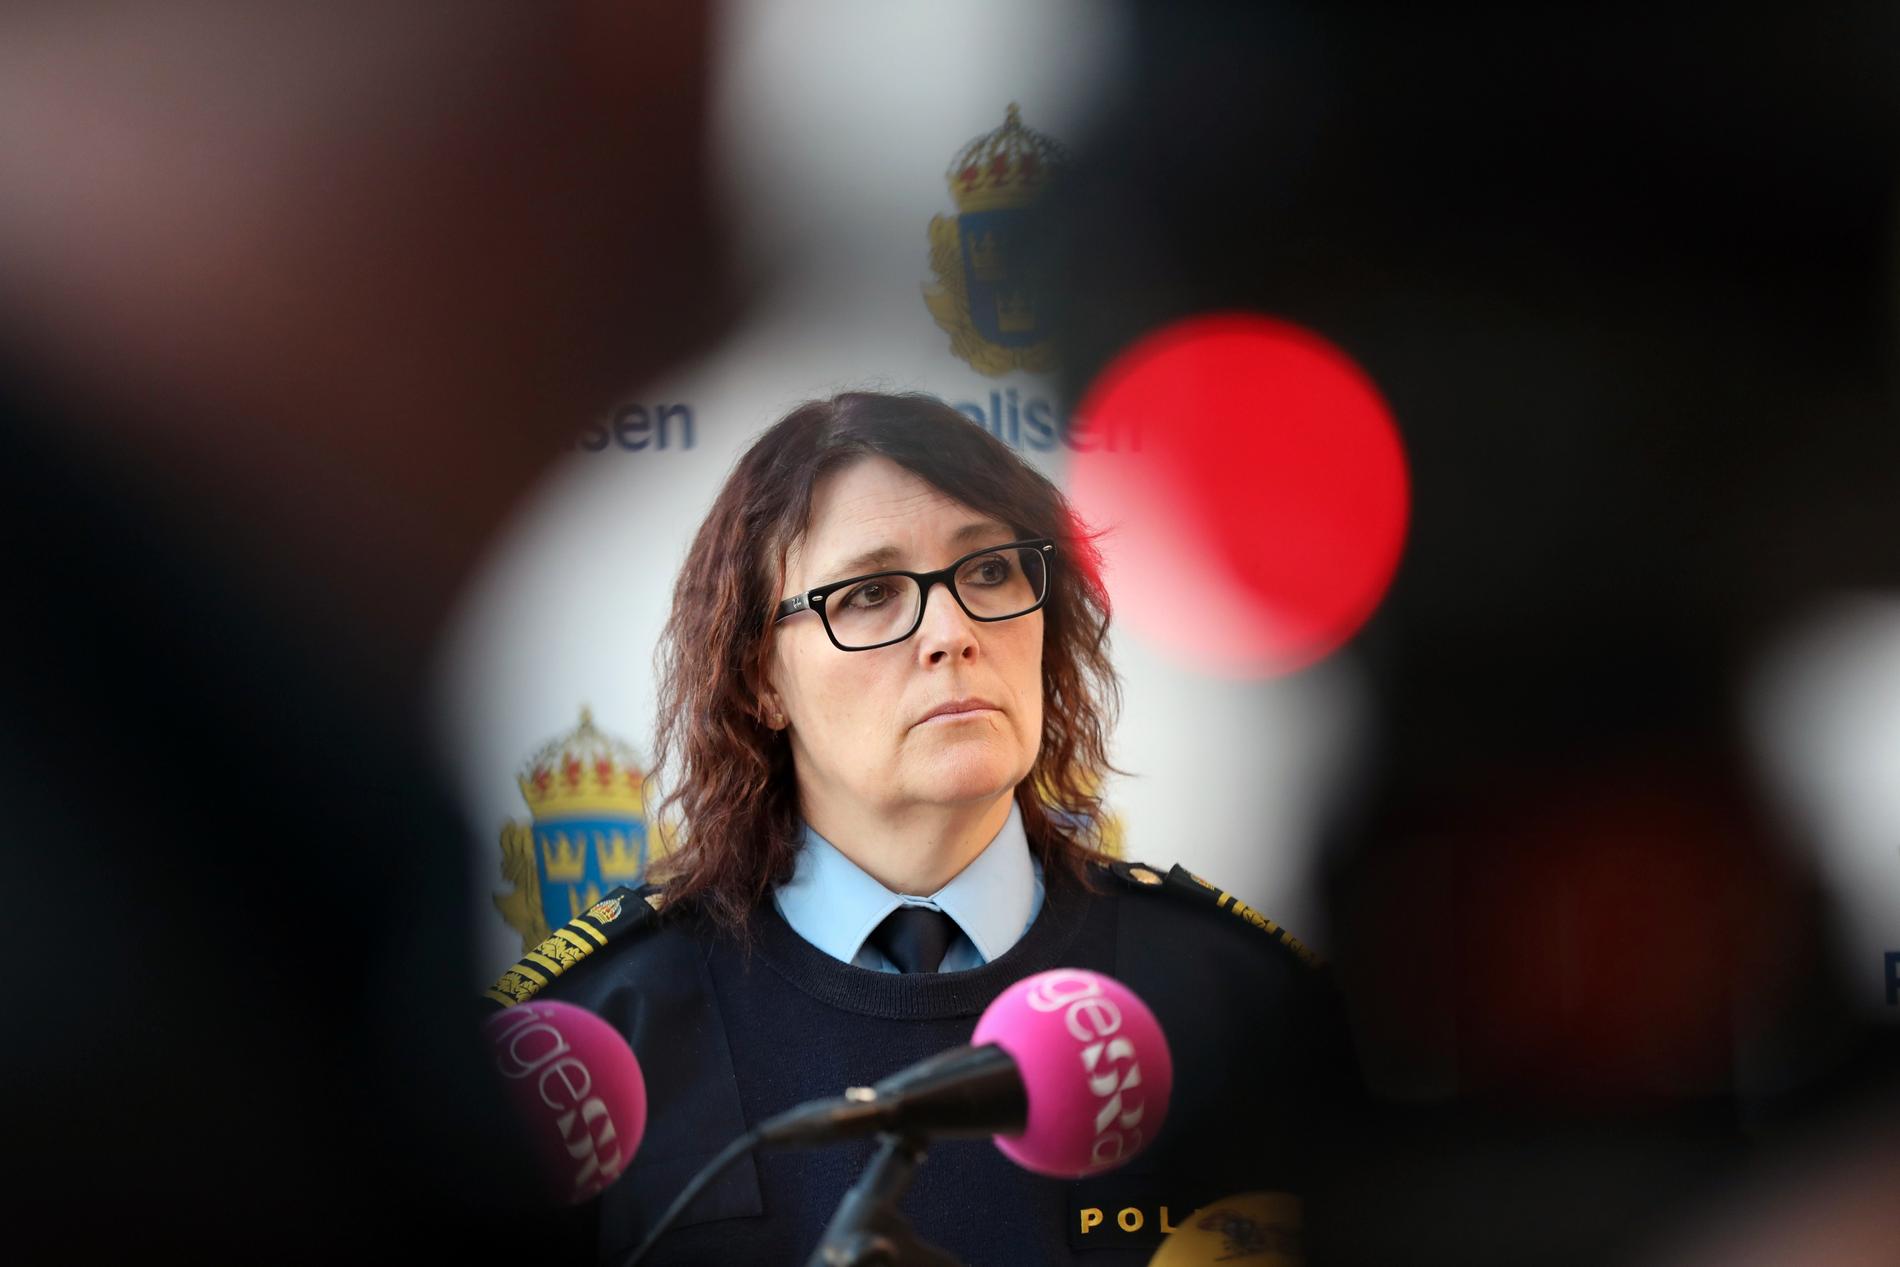 Petra Stenkula, polischef i Malmö, var föredömligt tydlig, rak och konkret vid tisdagens presskonferens. 